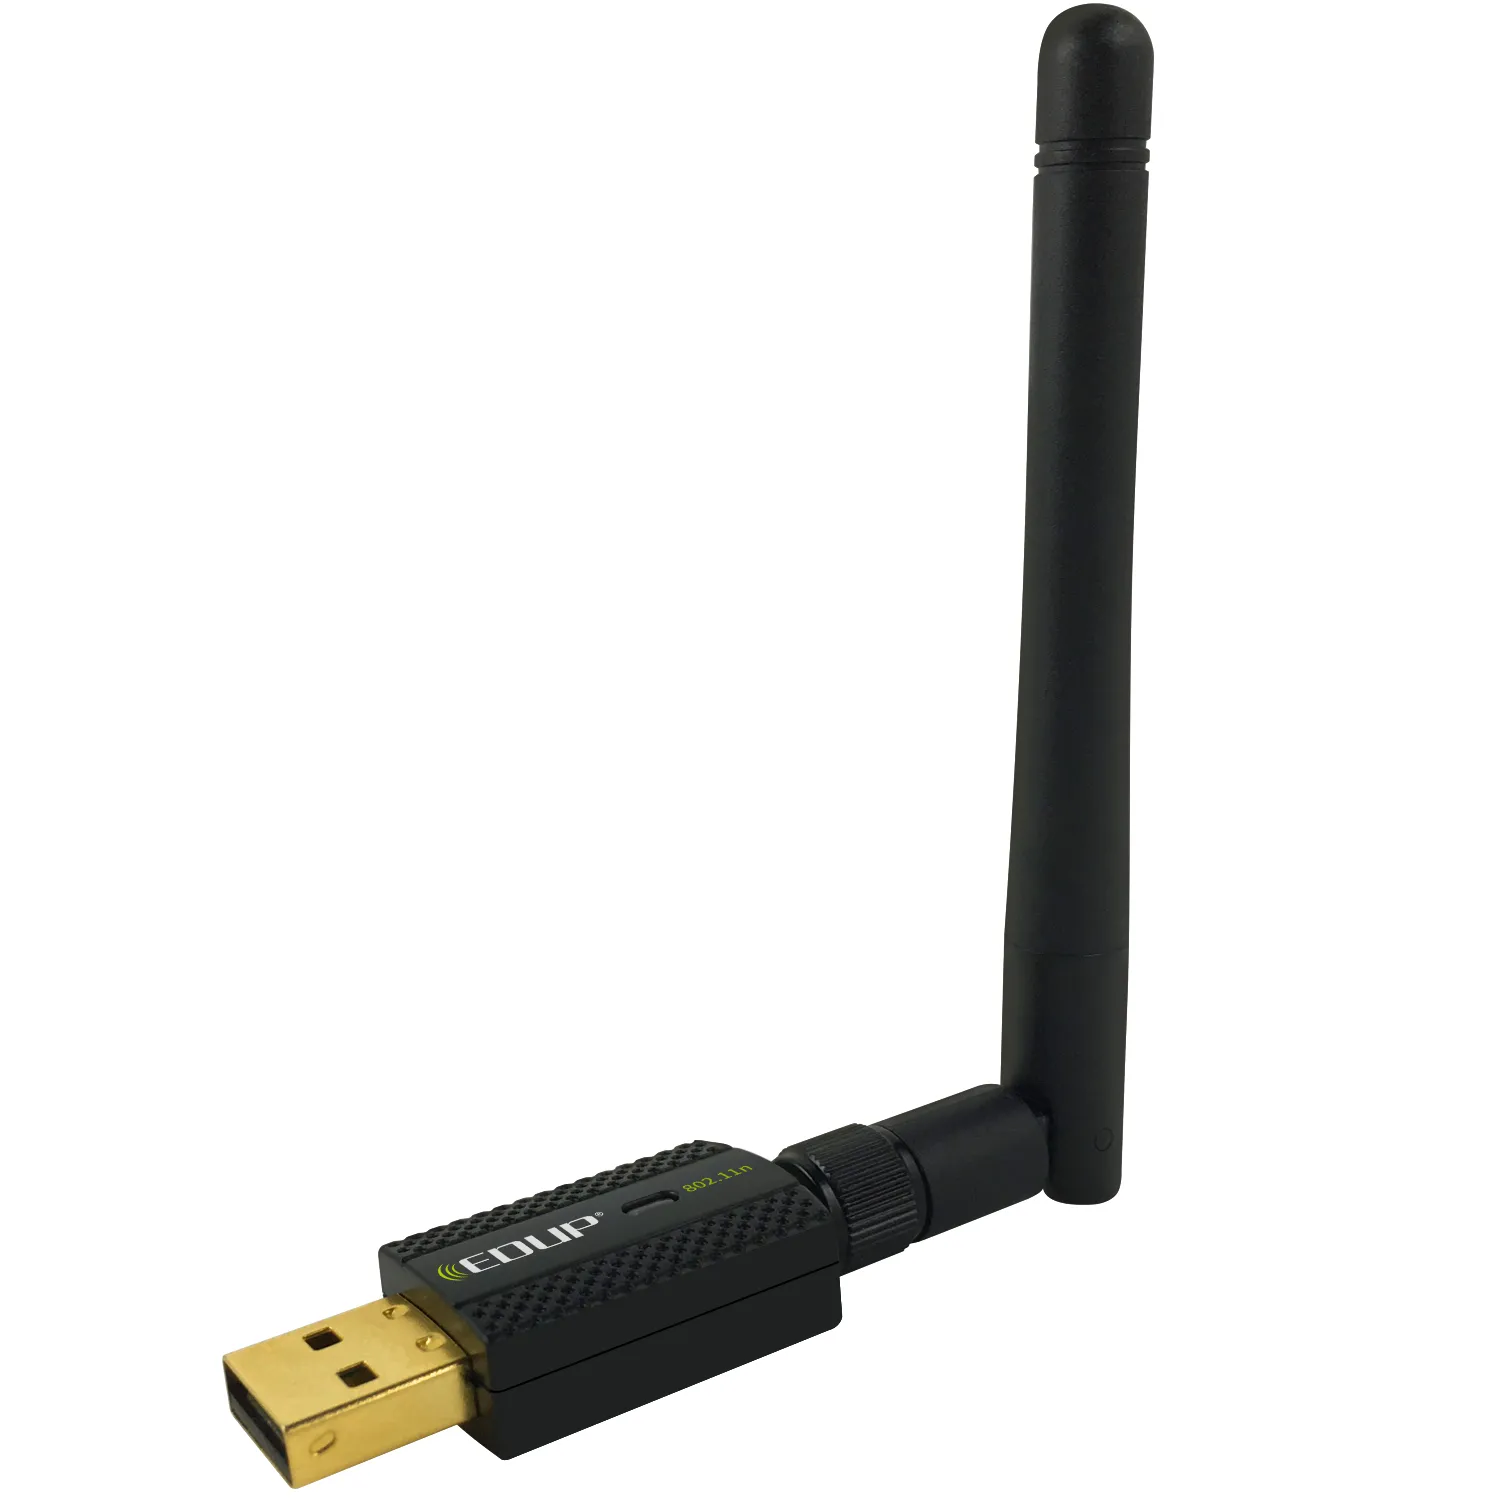 Лидер продаж, ключ Realtek 8192 802.11n 2,4 ГГц для спутникового приемника, Wi-Fi адаптер usb 300 mbp, Wi-Fi адаптер usb 2,0